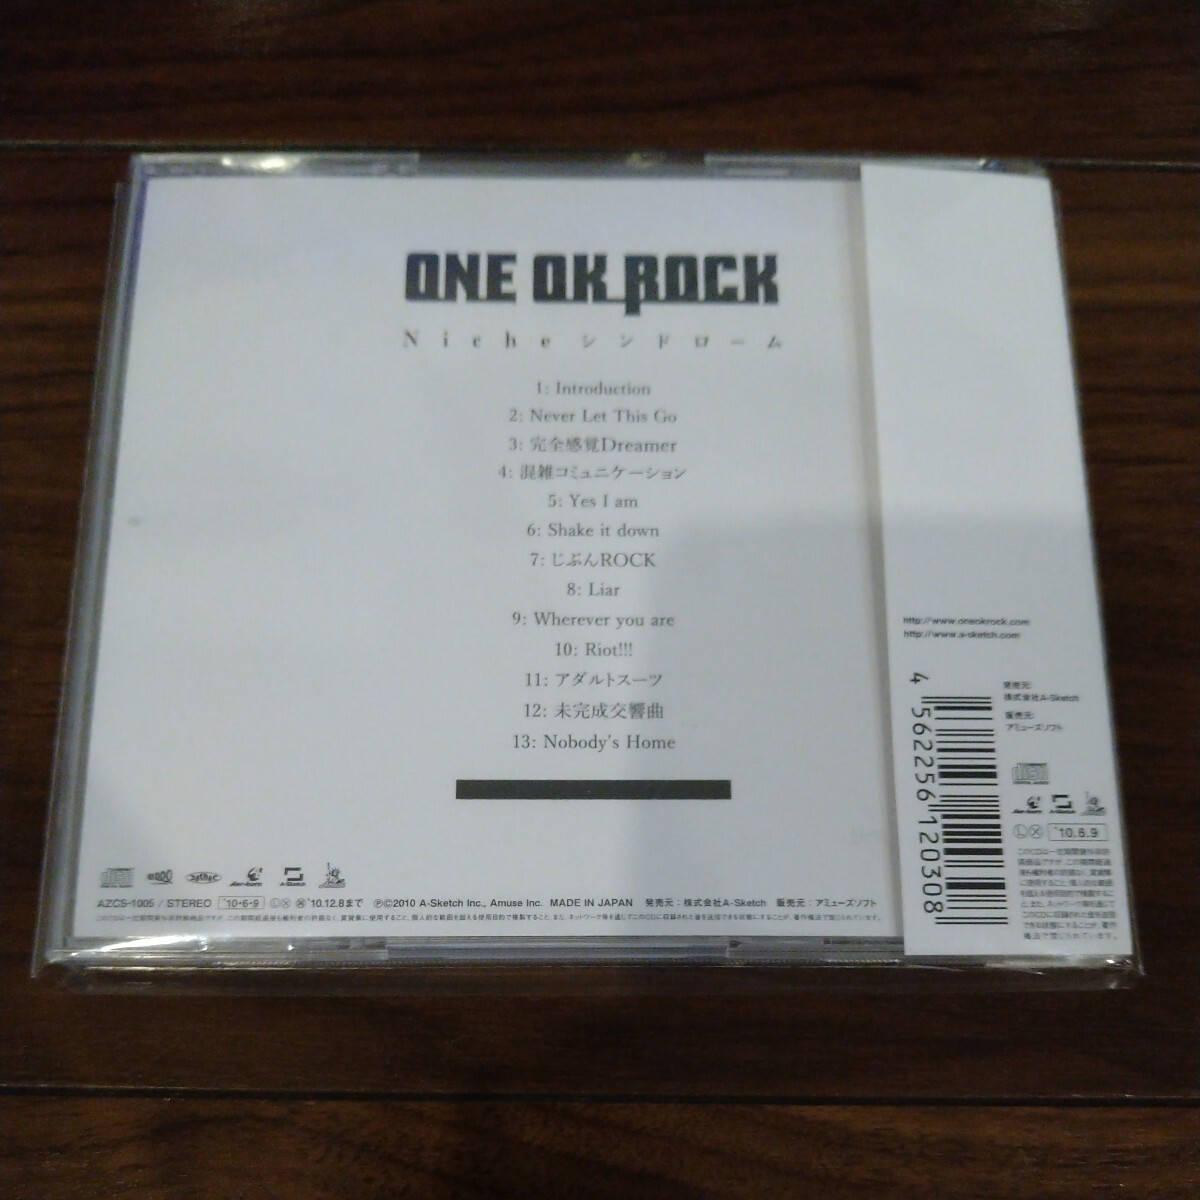 【送料無料】ONE OK ROCK CDアルバム Nicheシンドローム ワンオクロックの画像2